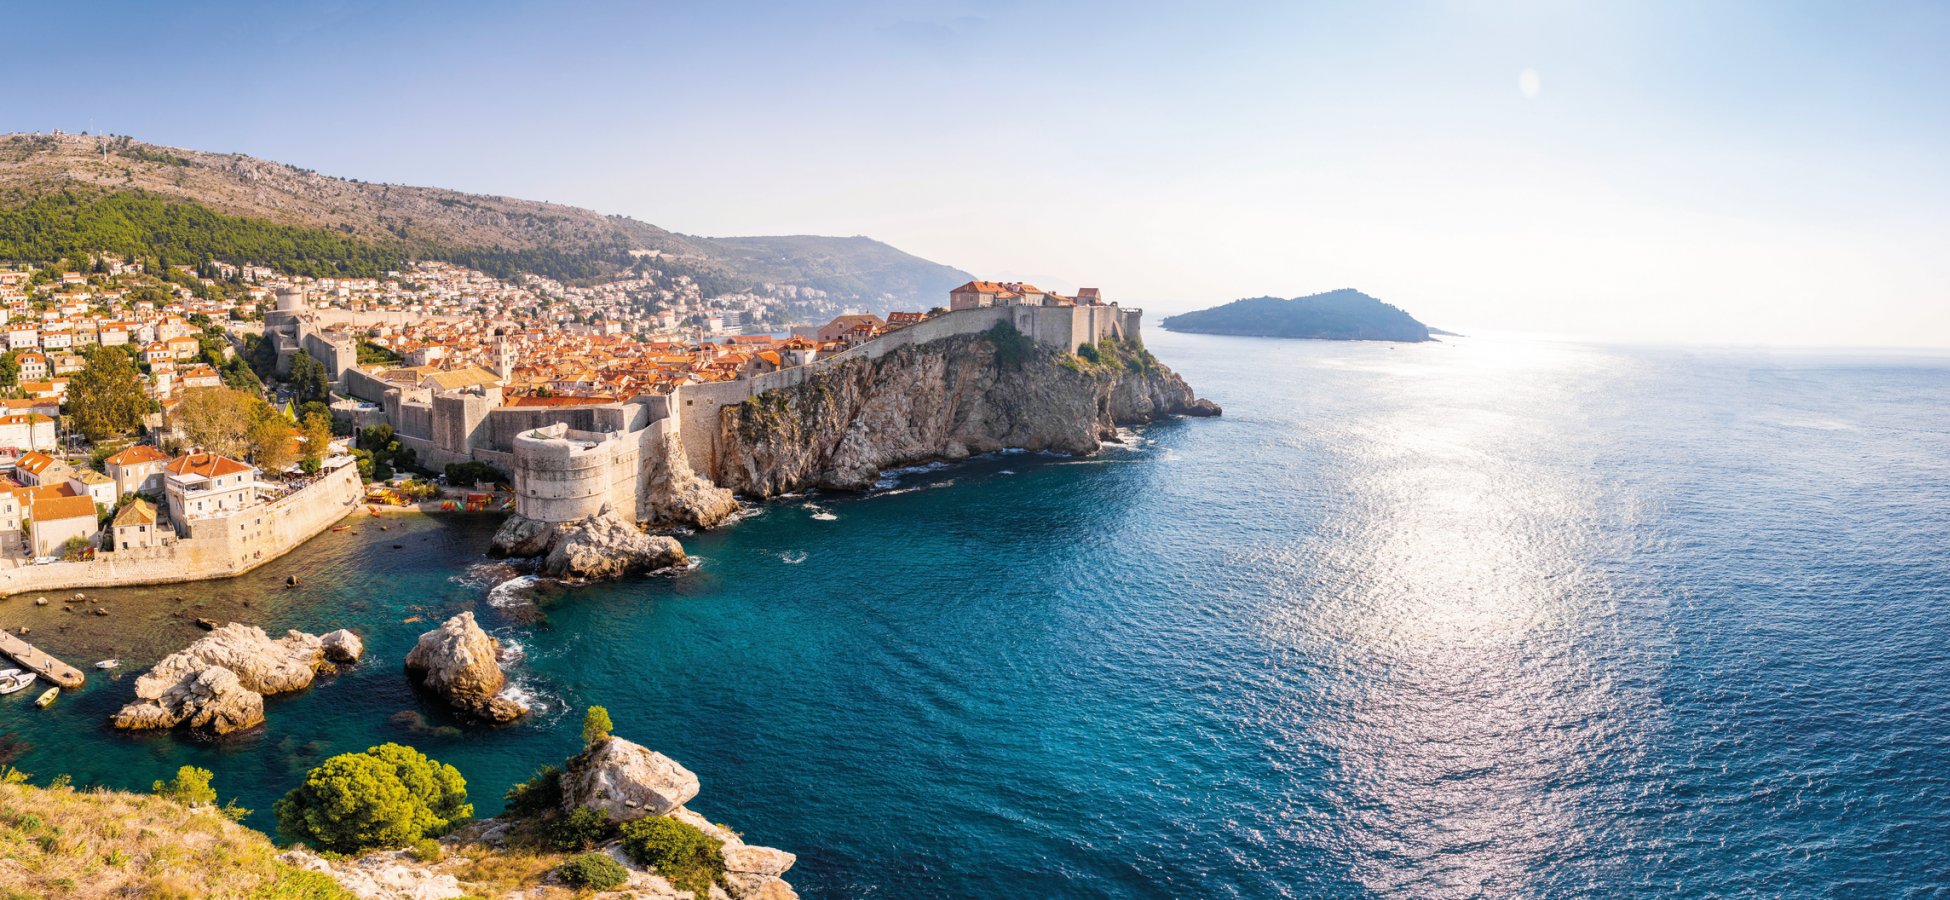 Blick von der Festung Lovrijenac auf die Altstadt von Dubrovnik &copy; dtatiana-fotolia.com